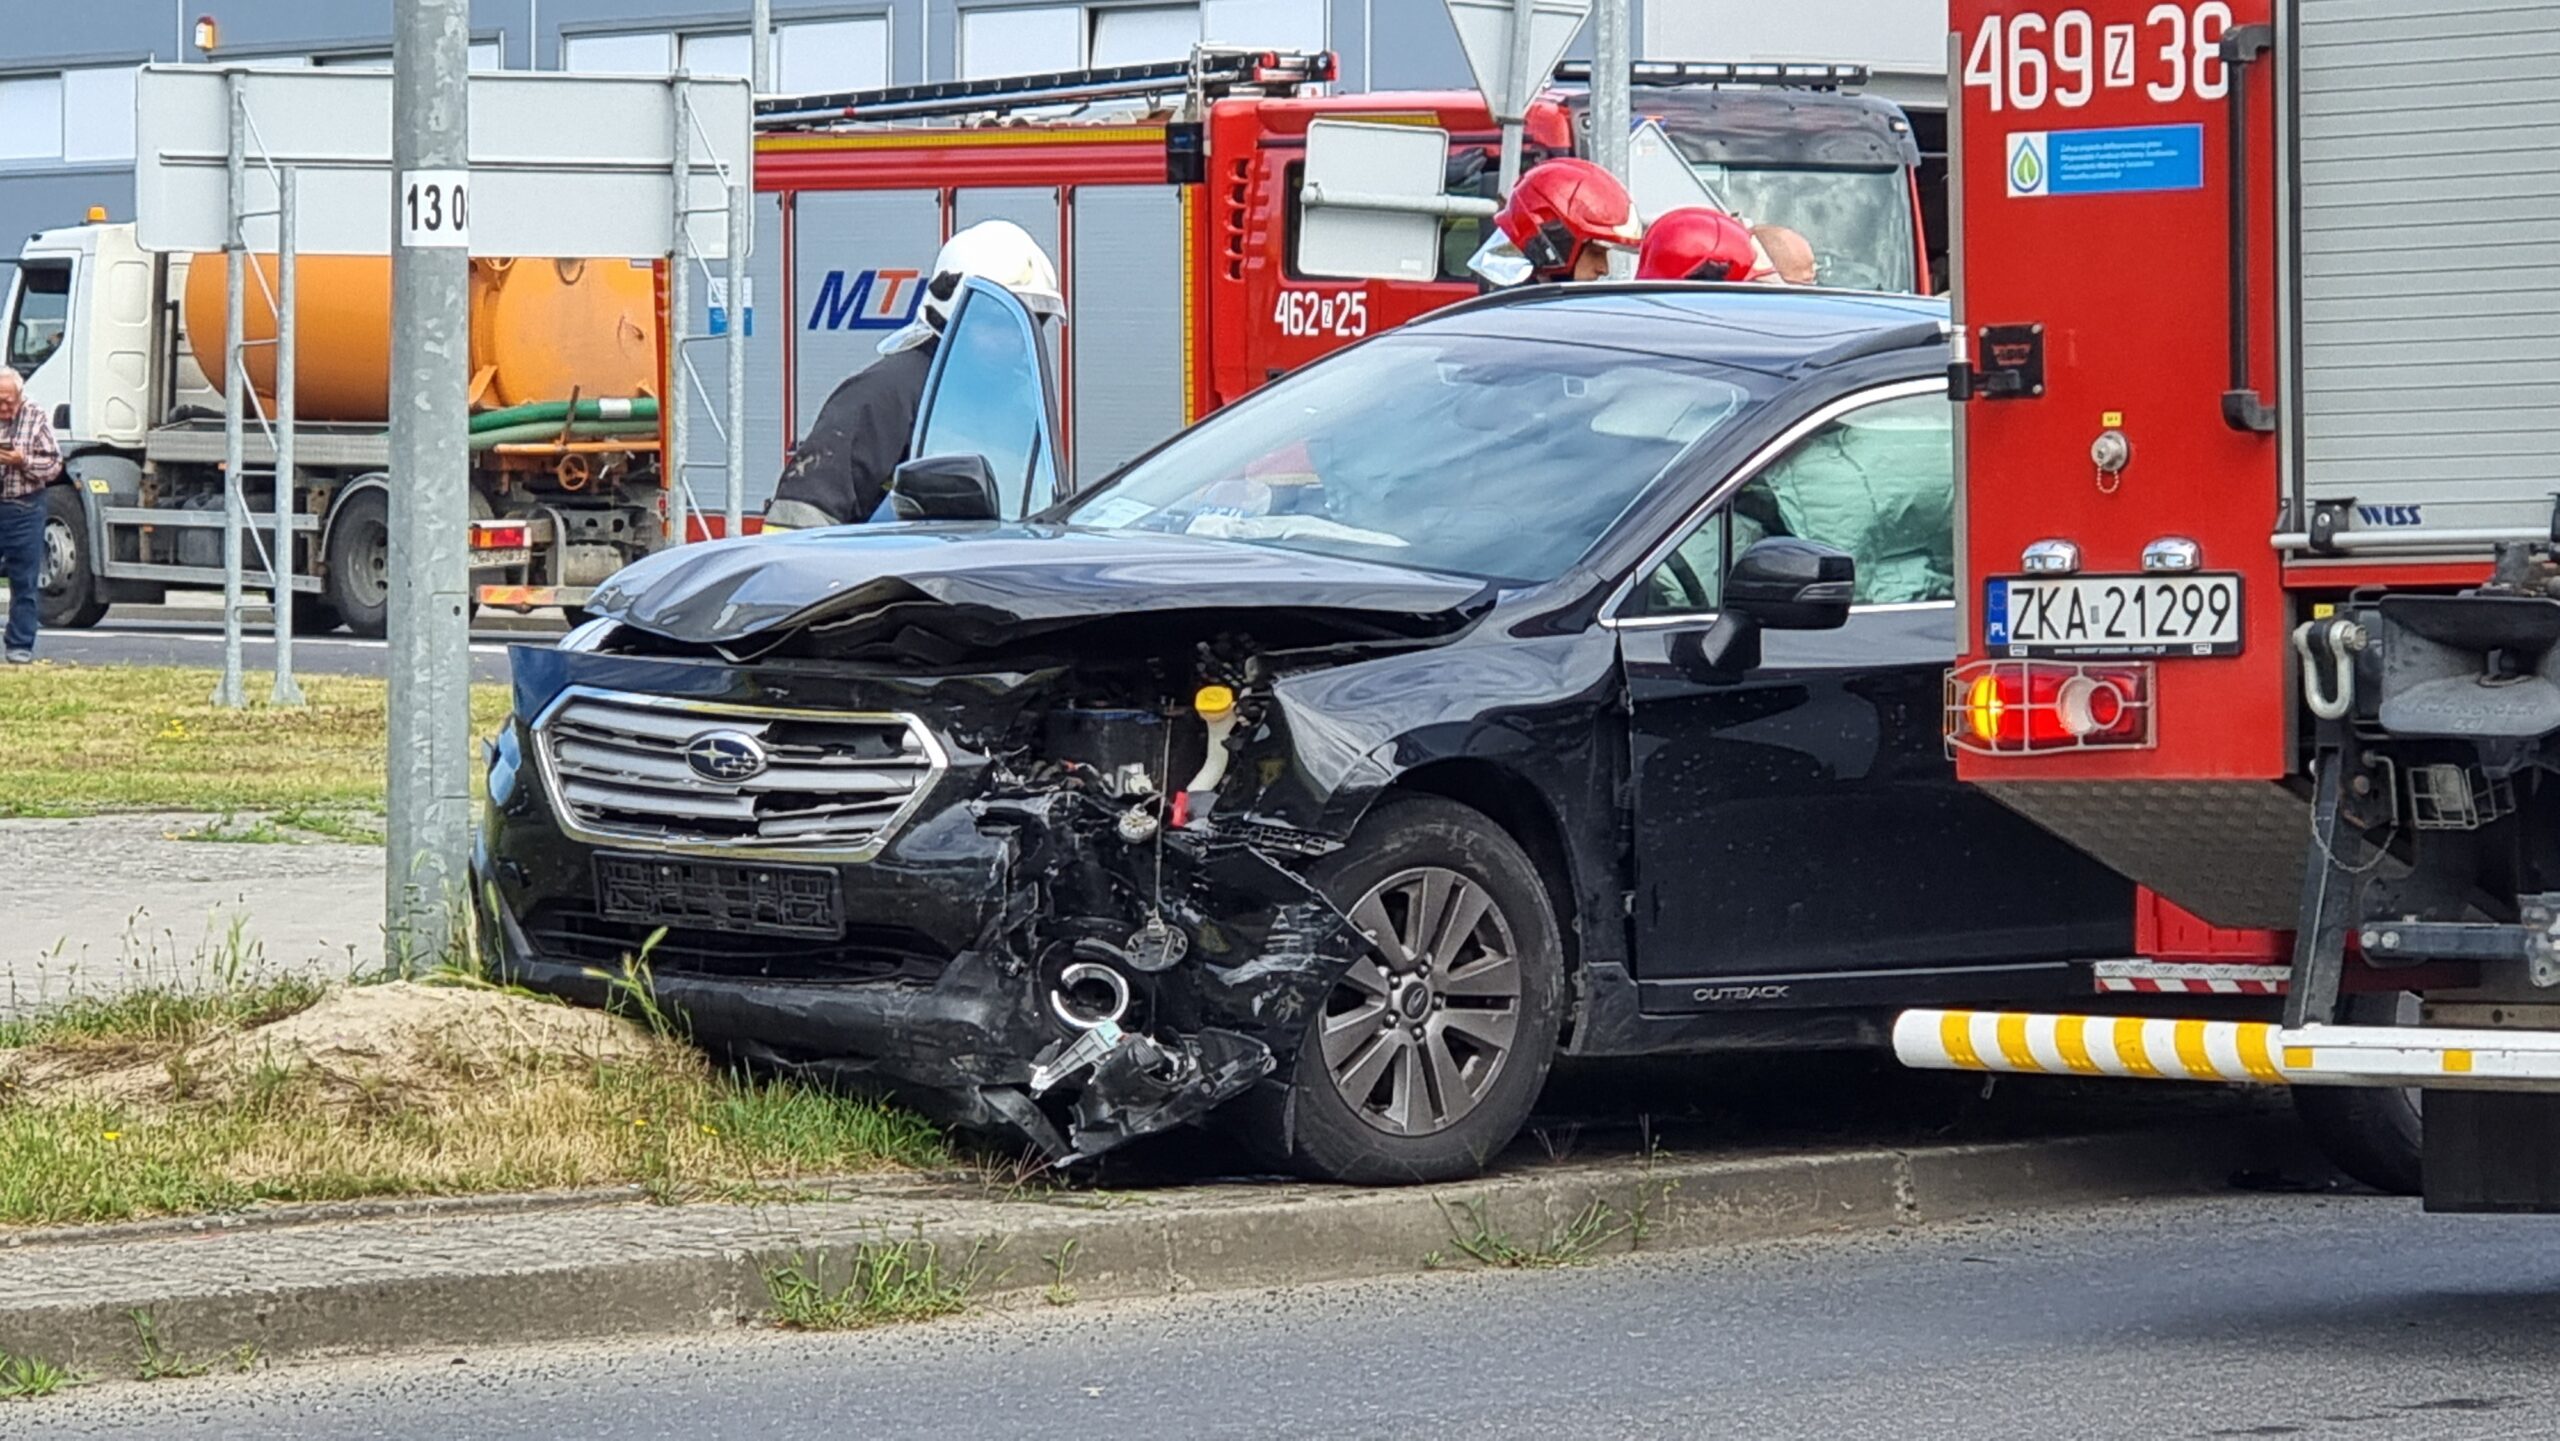 Wypadek w Wolinie. Trzy osoby poszkodowane Kamienskie.info